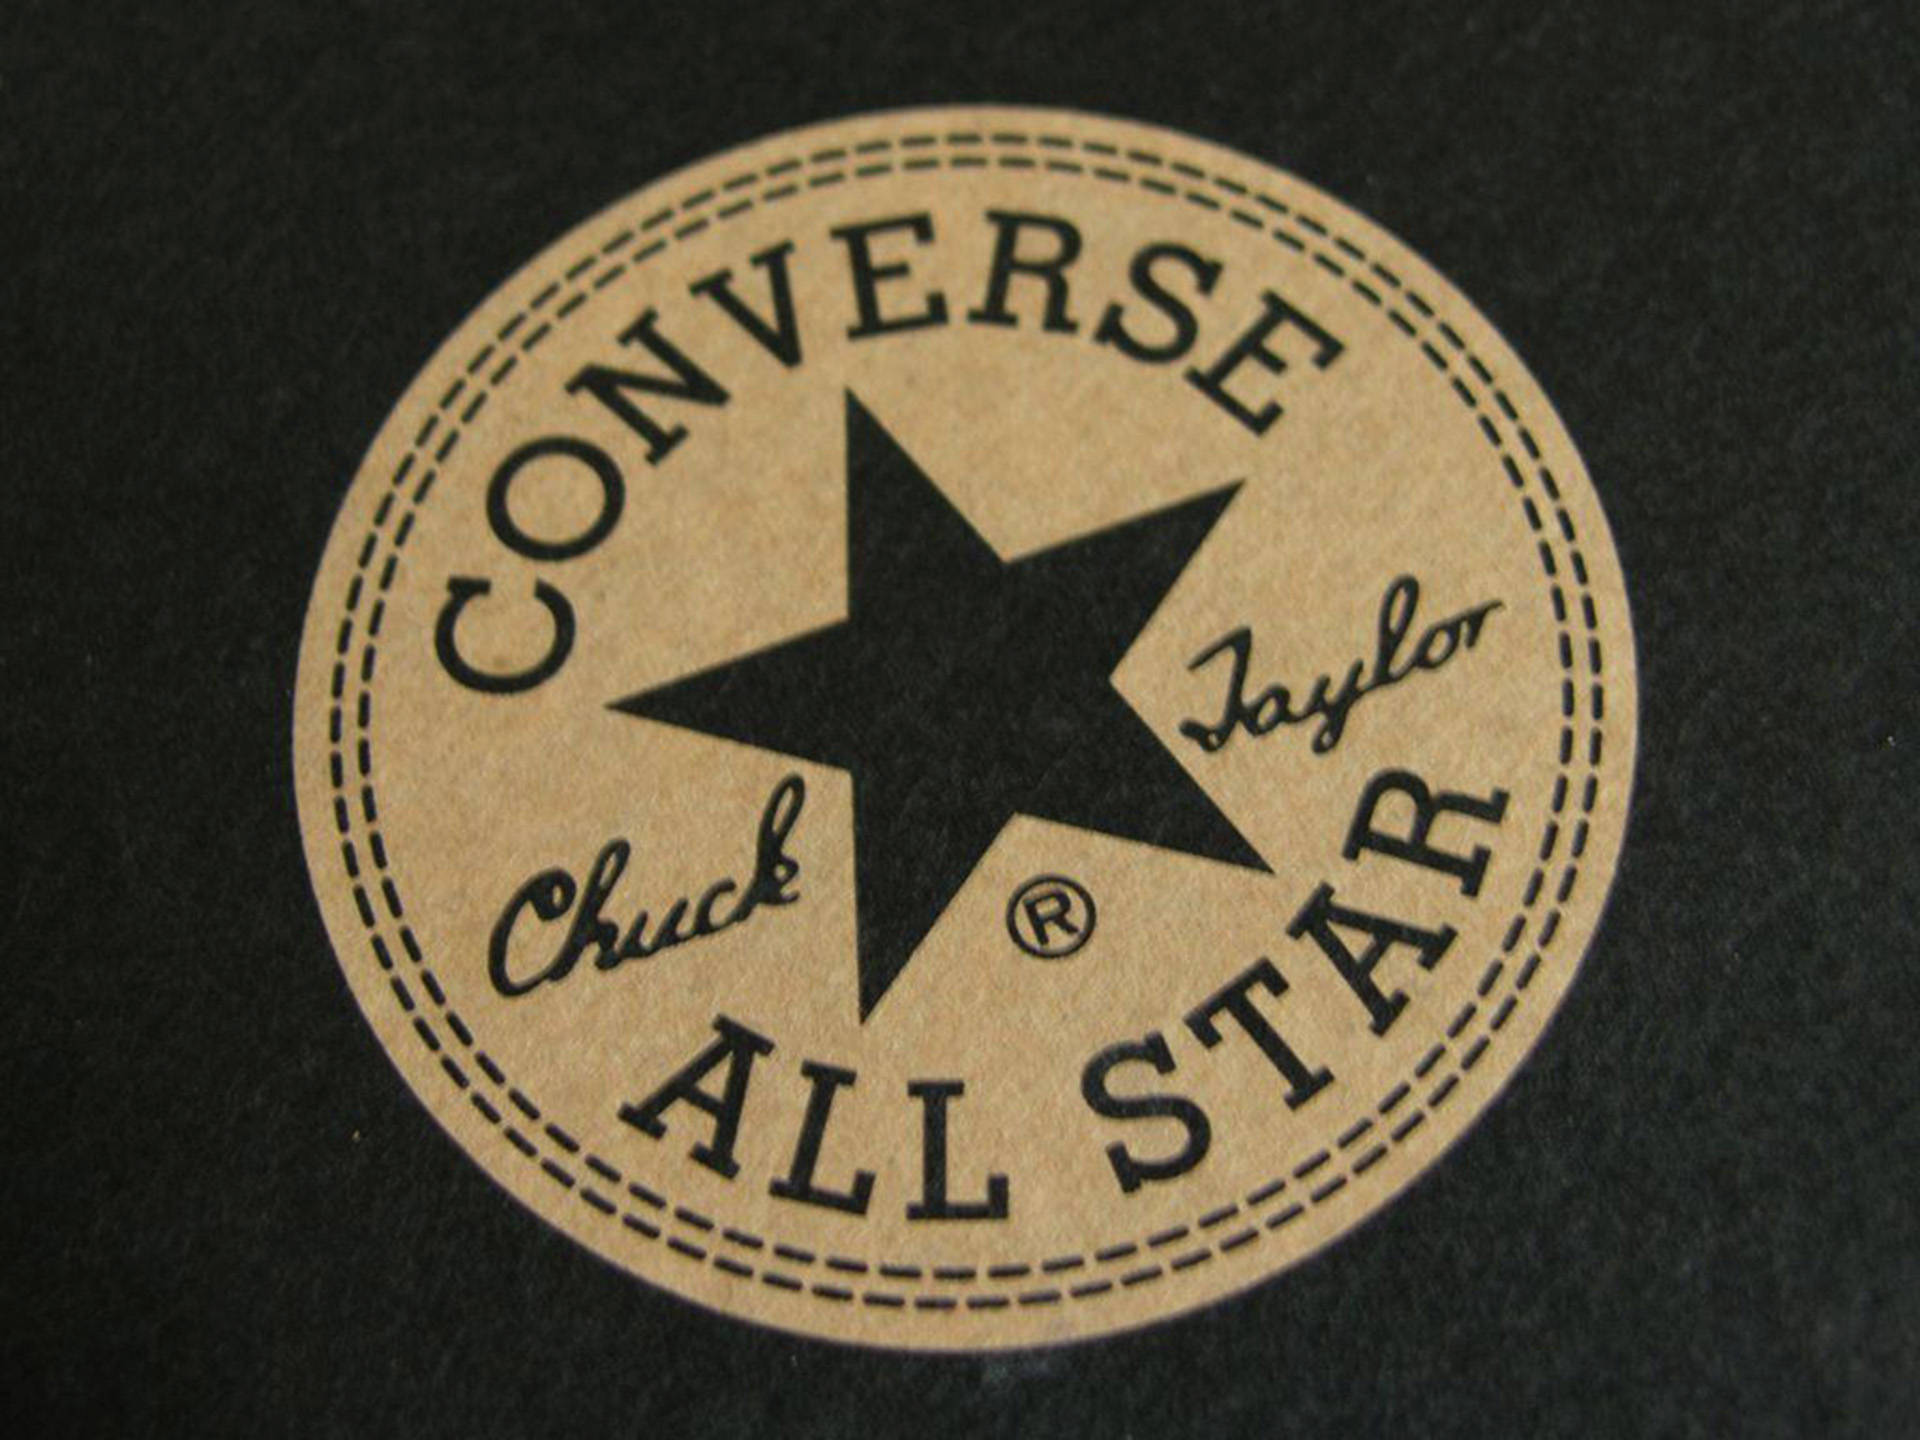 Logotipomarrom Da Converse. Papel de Parede